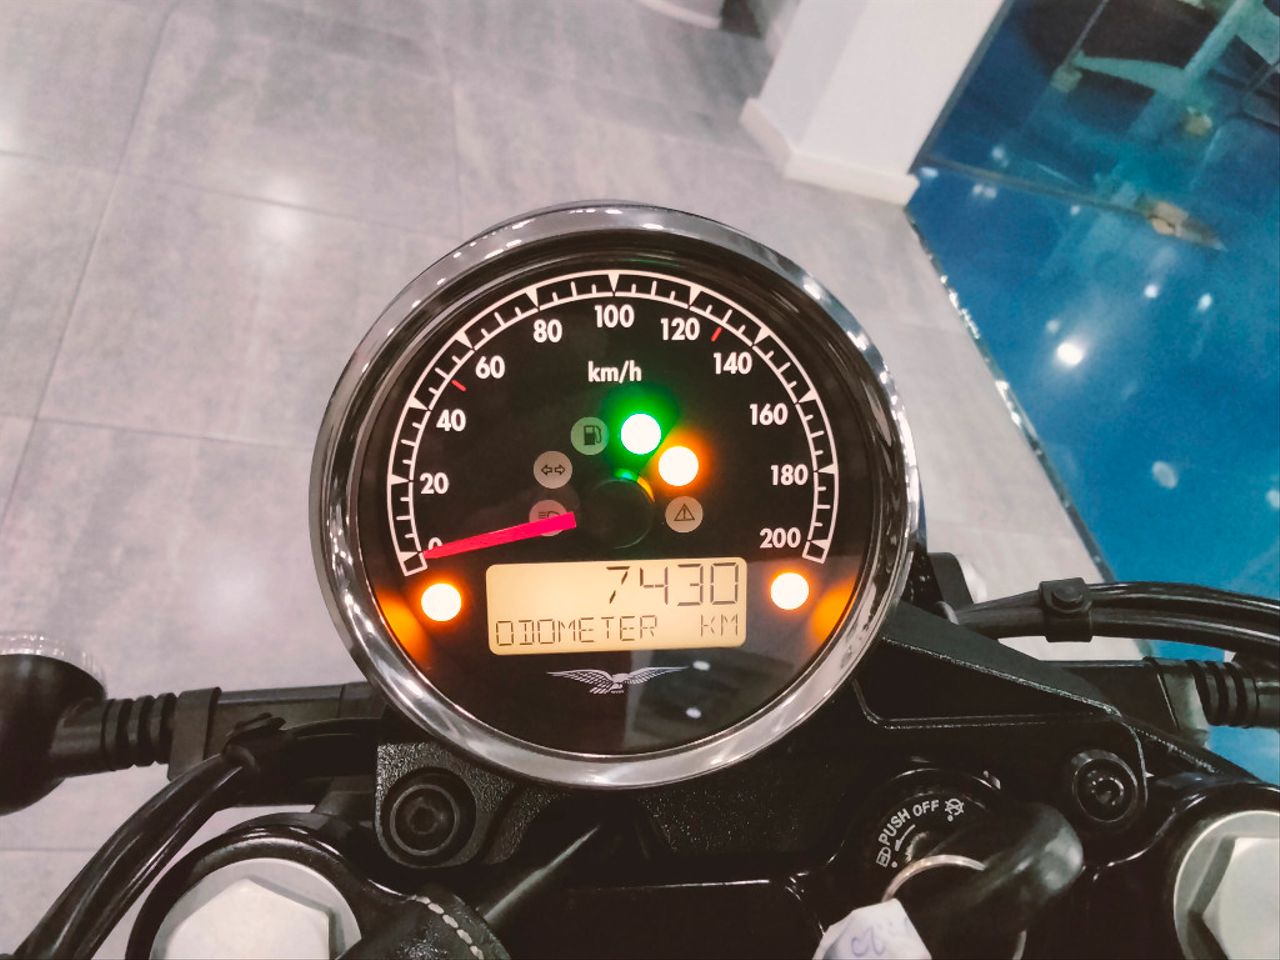 Moto MOTO GUZZI V7 III MILANO de seguna mano del año 2020 en Málaga